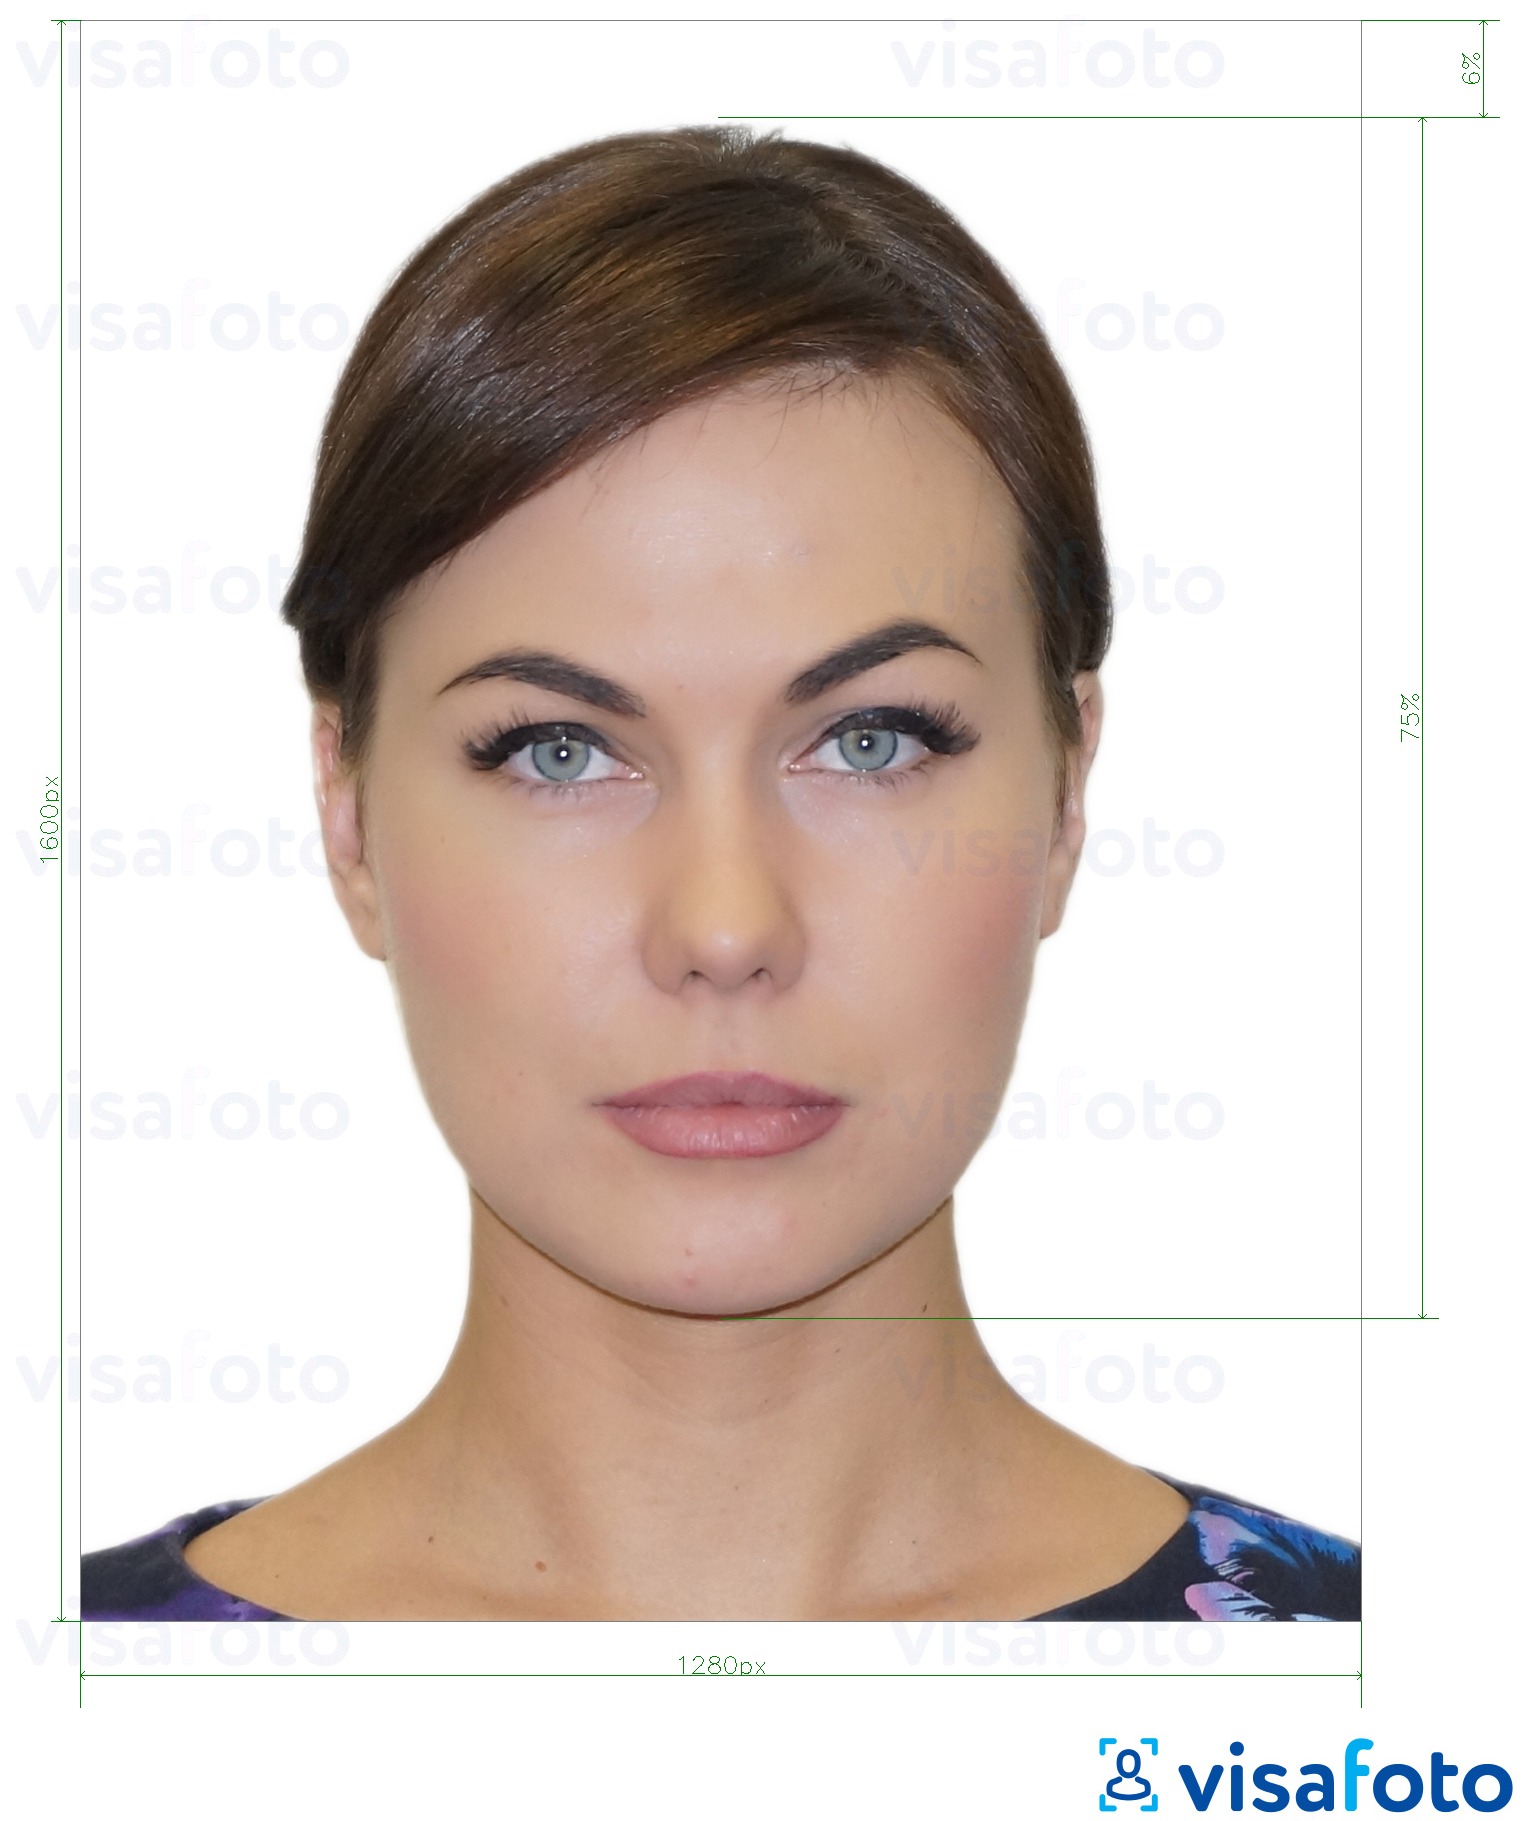 Voorbeeld van foto voor Griekenland rijbewijs 1280x1600 pixels met exacte maatspecificatie